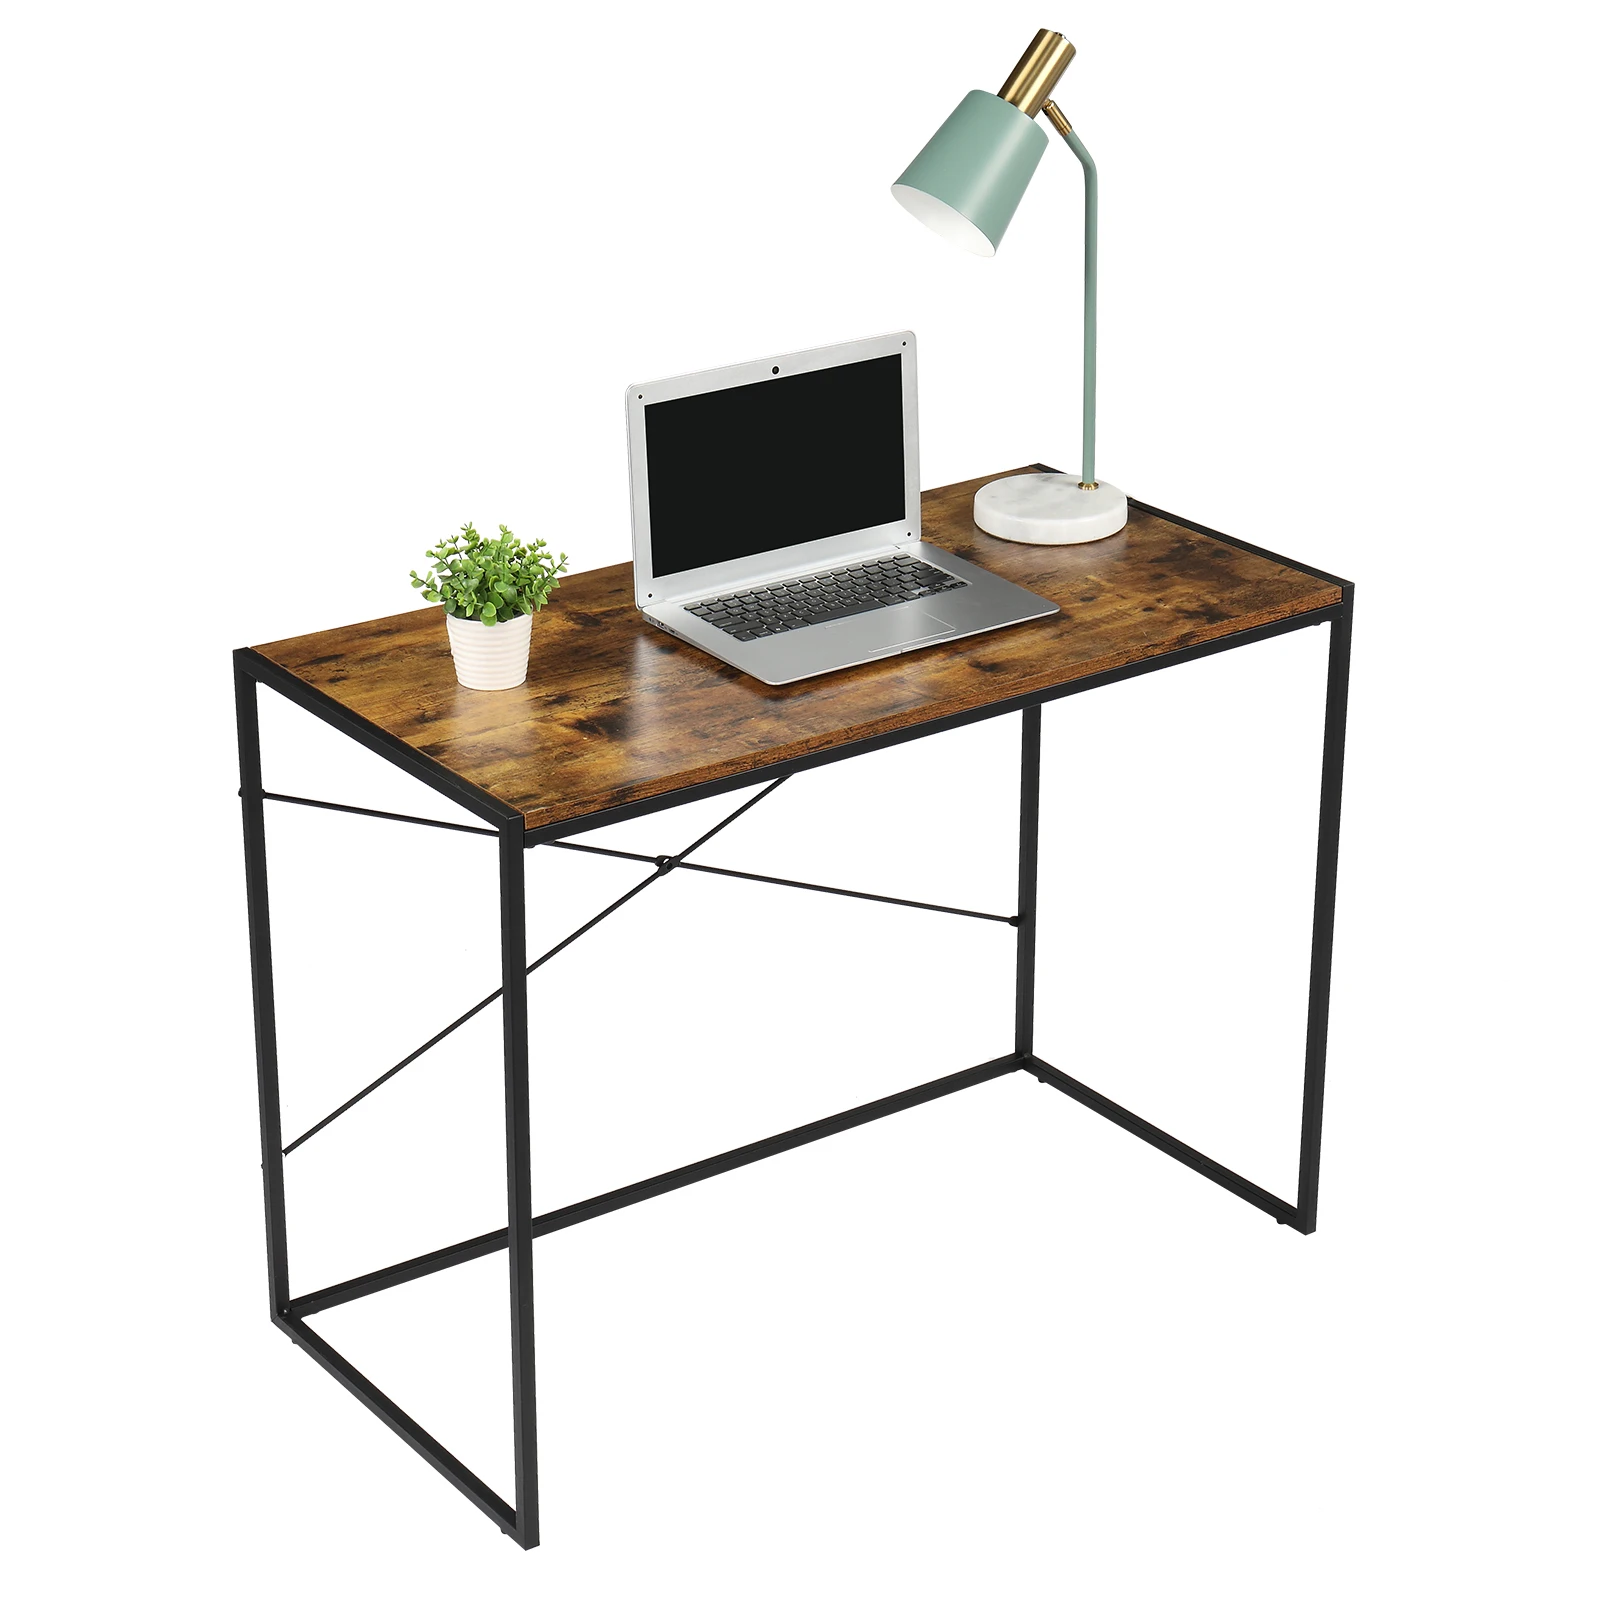 

100x50x75CM Simple Cross Computer Desk PC Laptop Study Table Workstation for Home&Office Black Paint Frame MDF Paste Desktop